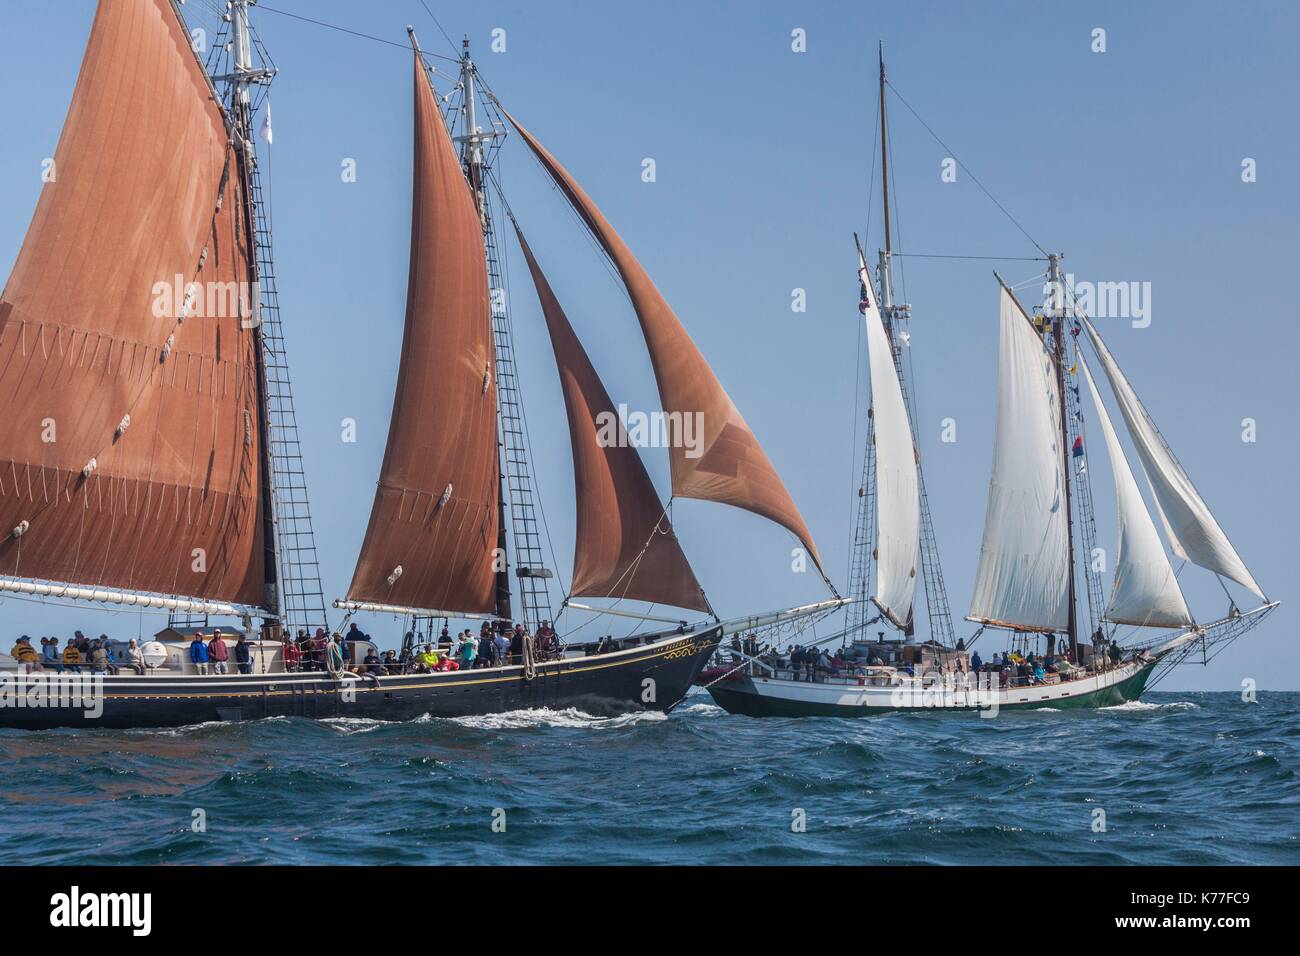 United States, Massachusetts, Cape Ann, Gloucester, America's Oldest Seaport, Gloucester Schooner Festival, schooner sailing ships Stock Photo